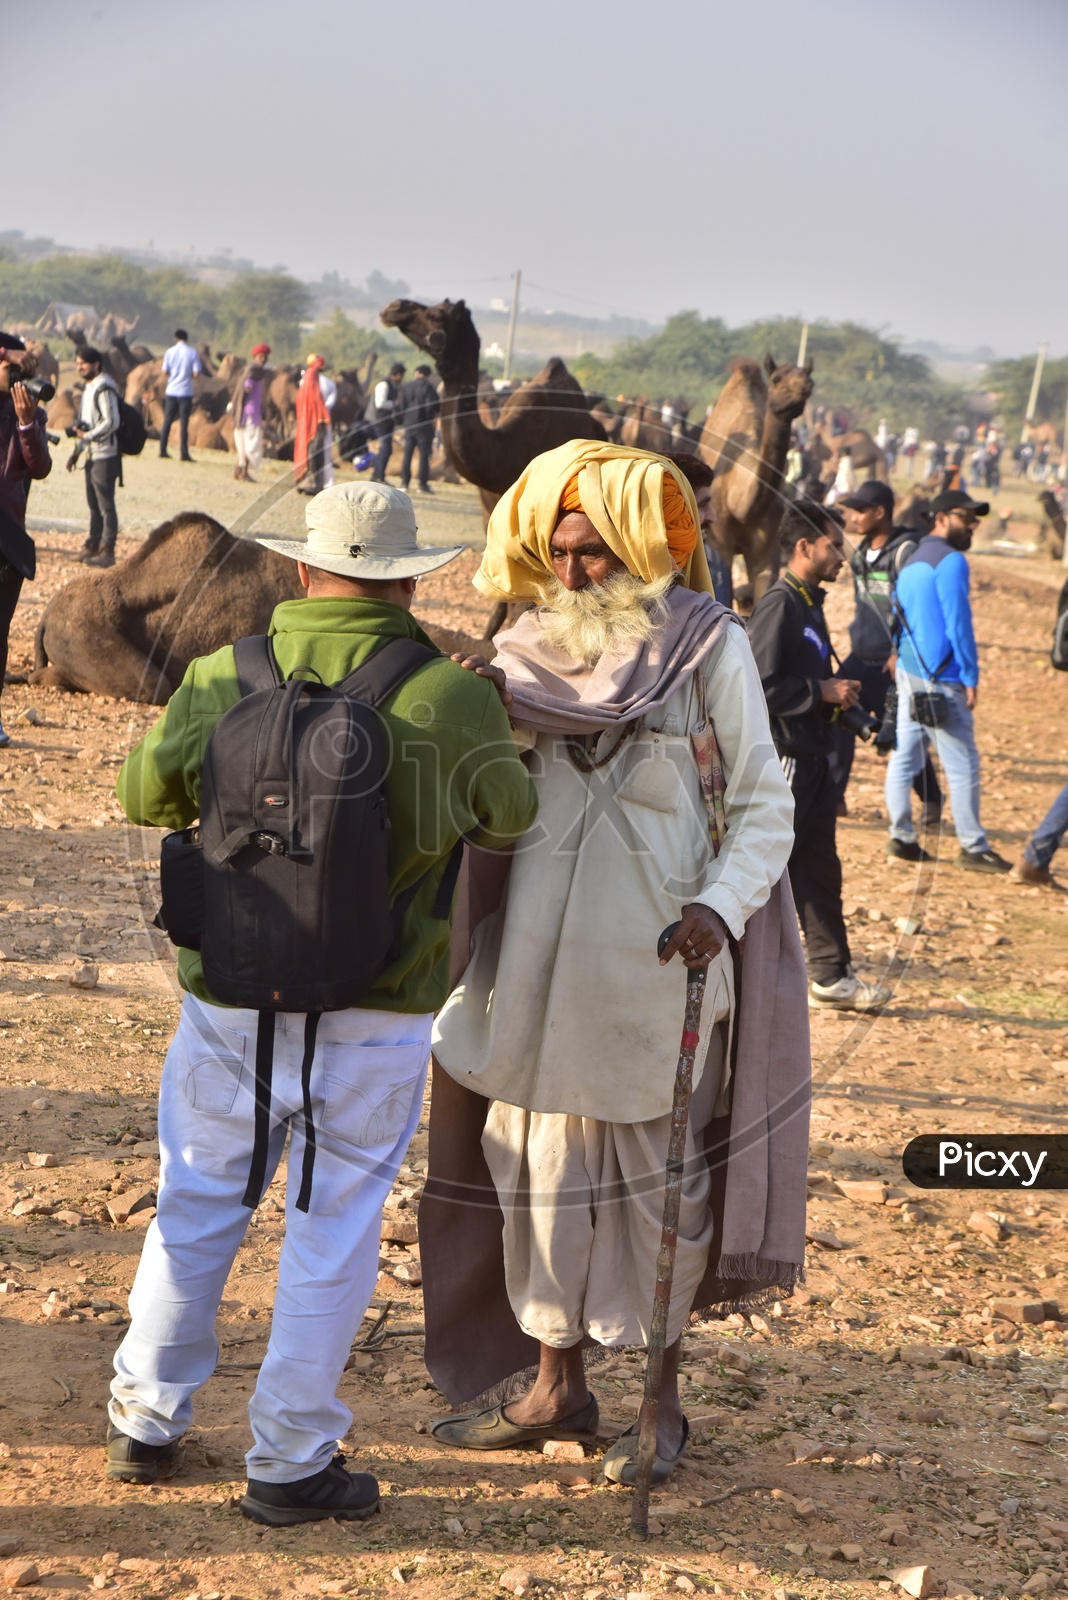 Rajasthani Men at Pushkar Camel Fair, 2018